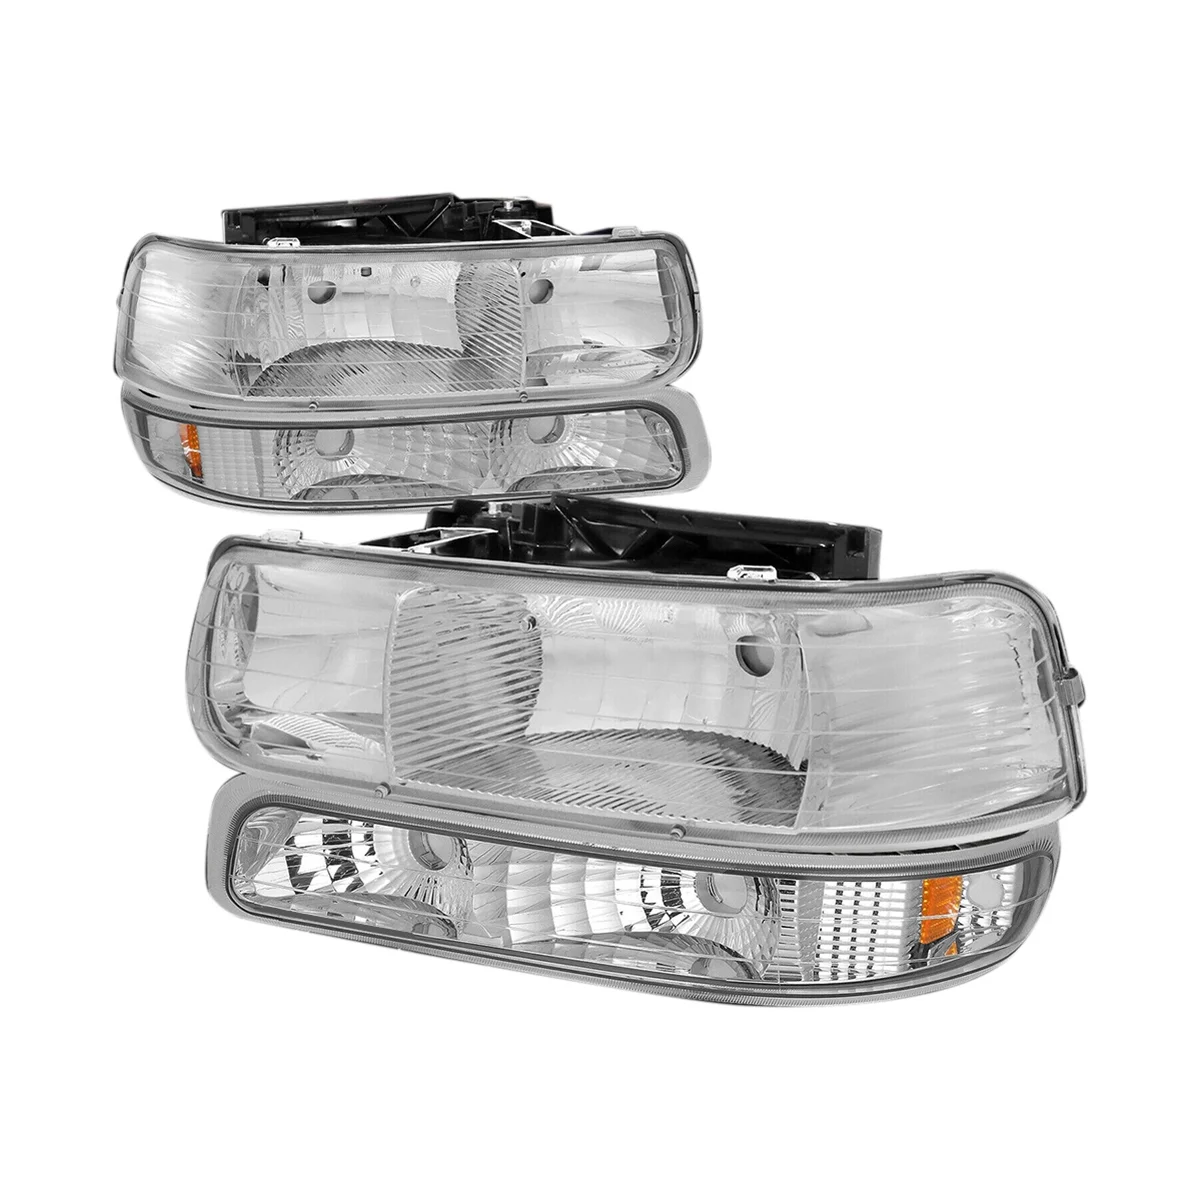 

LED DRL Daytime Running Light Fog Lamp Driving Light Parking Lights HD Headlight for 99-02